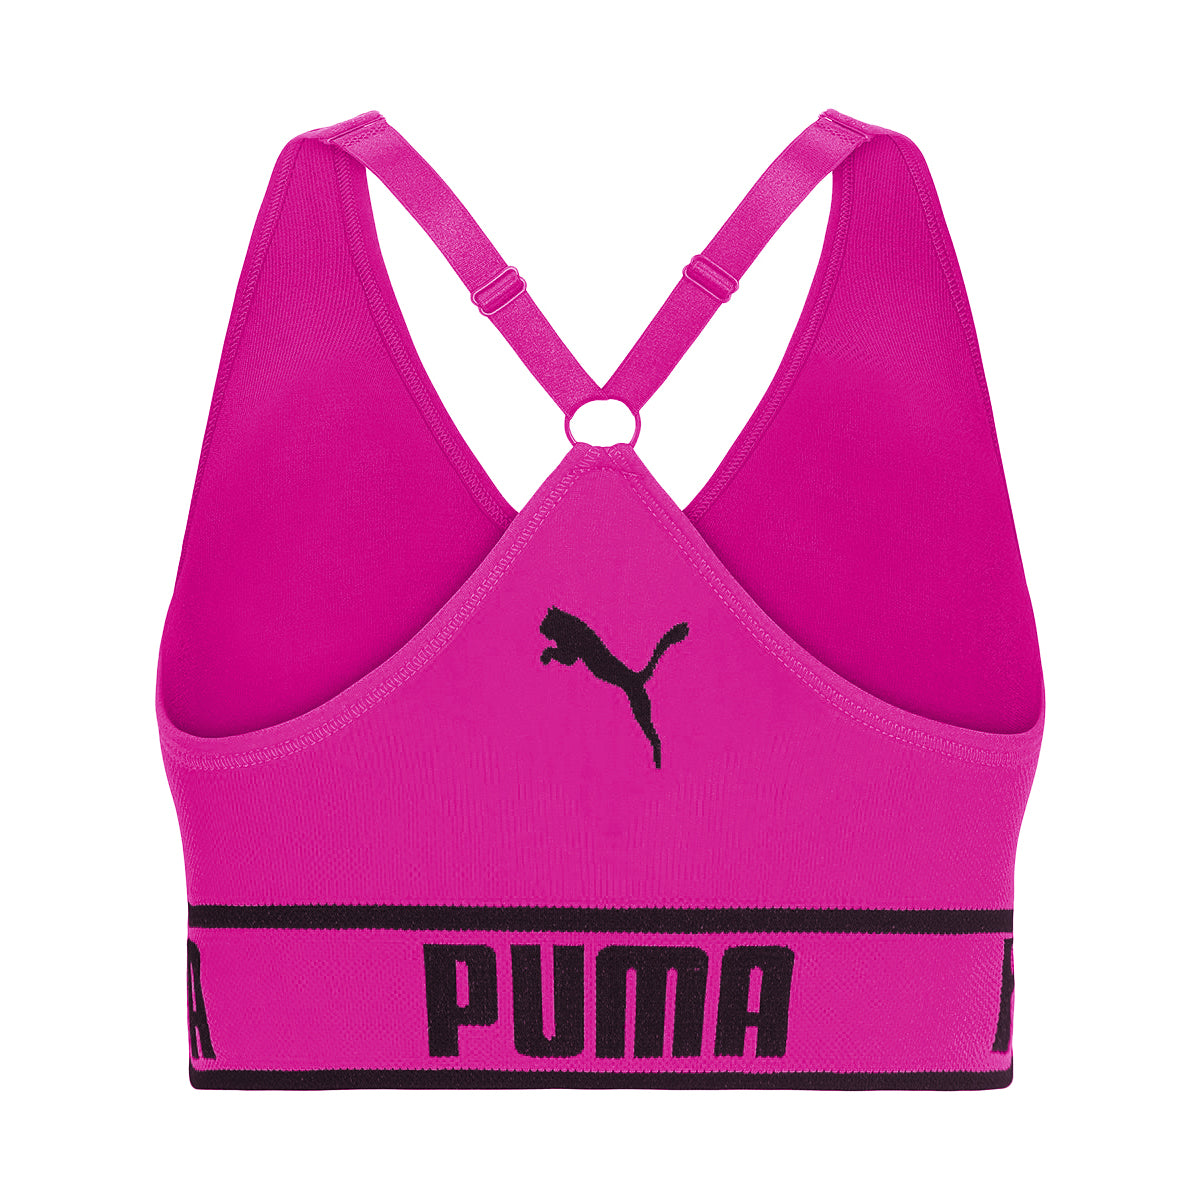 Puma Pro-Tech Womens Sports Bra Purple PW1011 - Free Shipping at